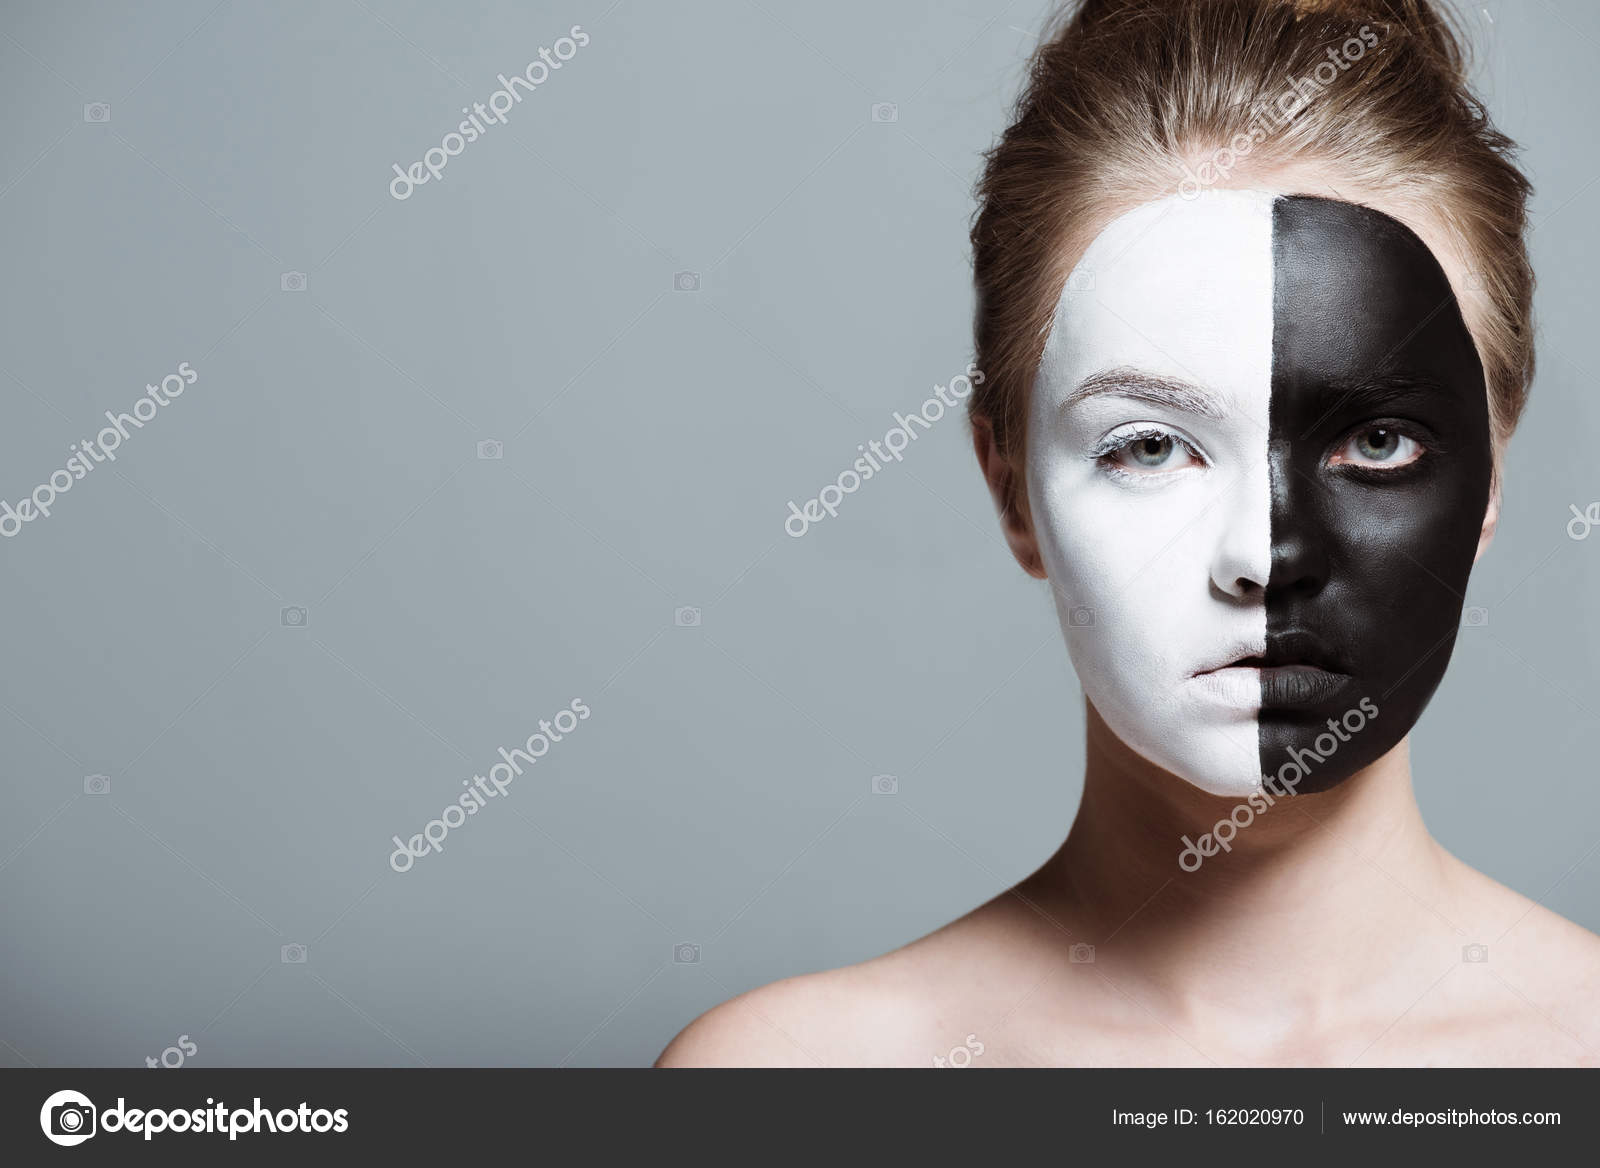 Uma menina com o rosto pintado com tinta preta e branca.